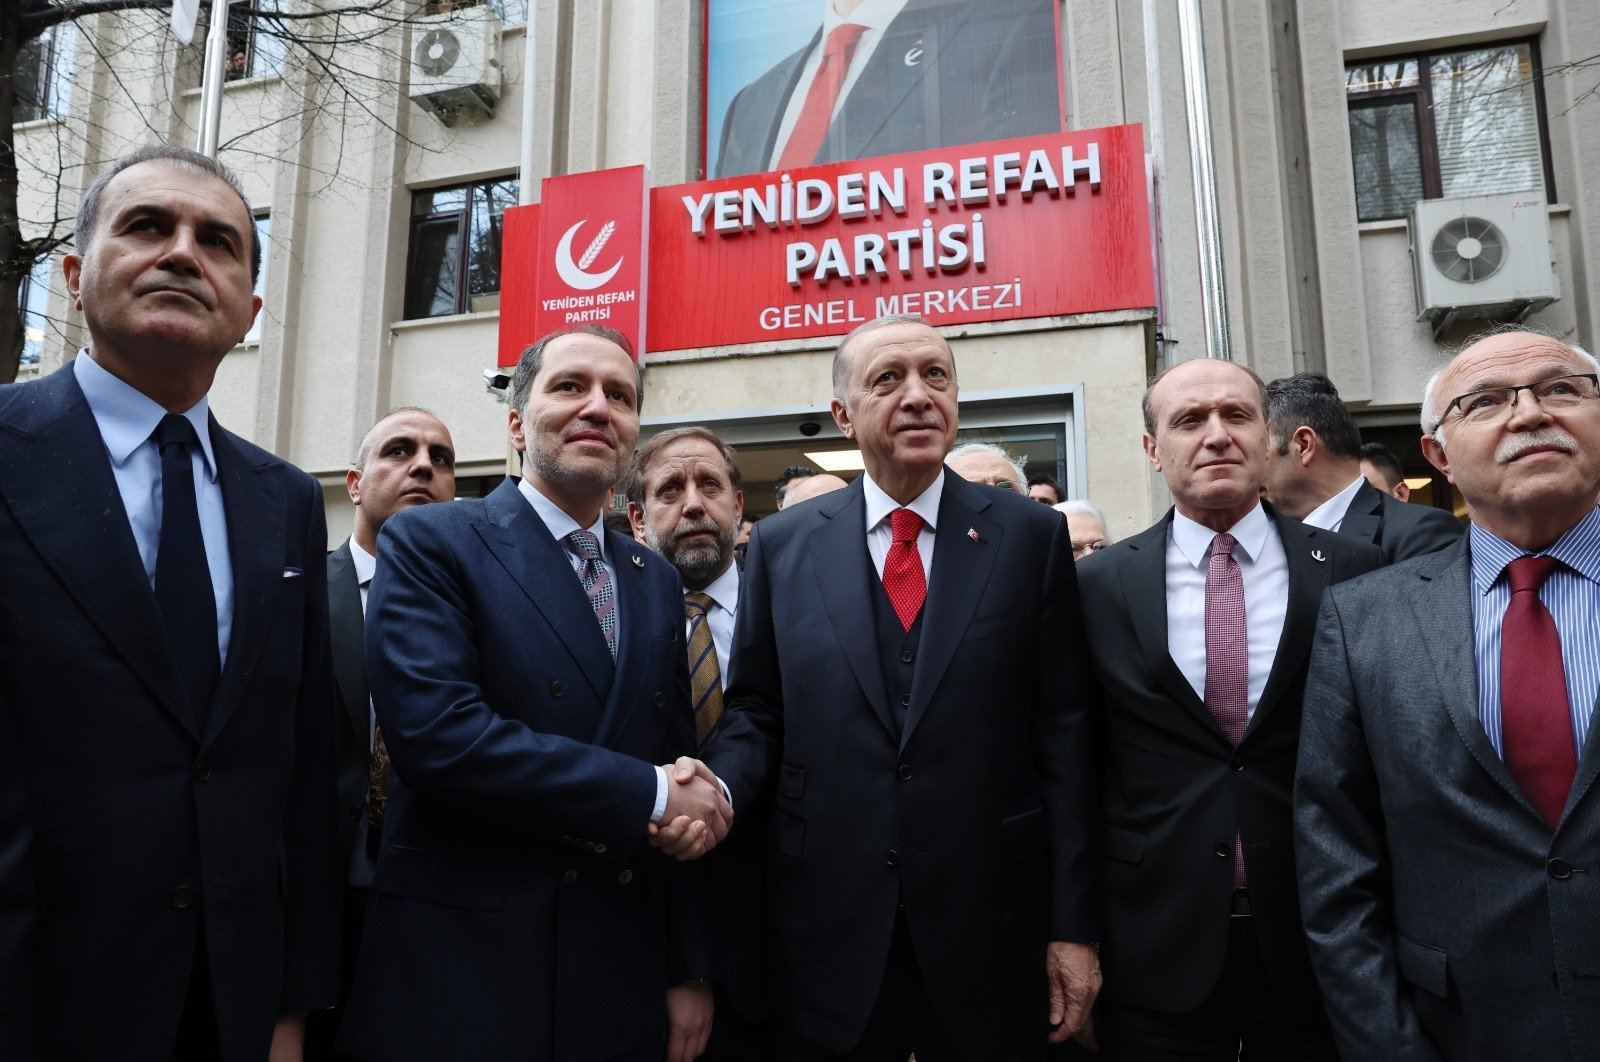 Negara dan masa depan aliansi saat pemilihan Turki semakin dekat